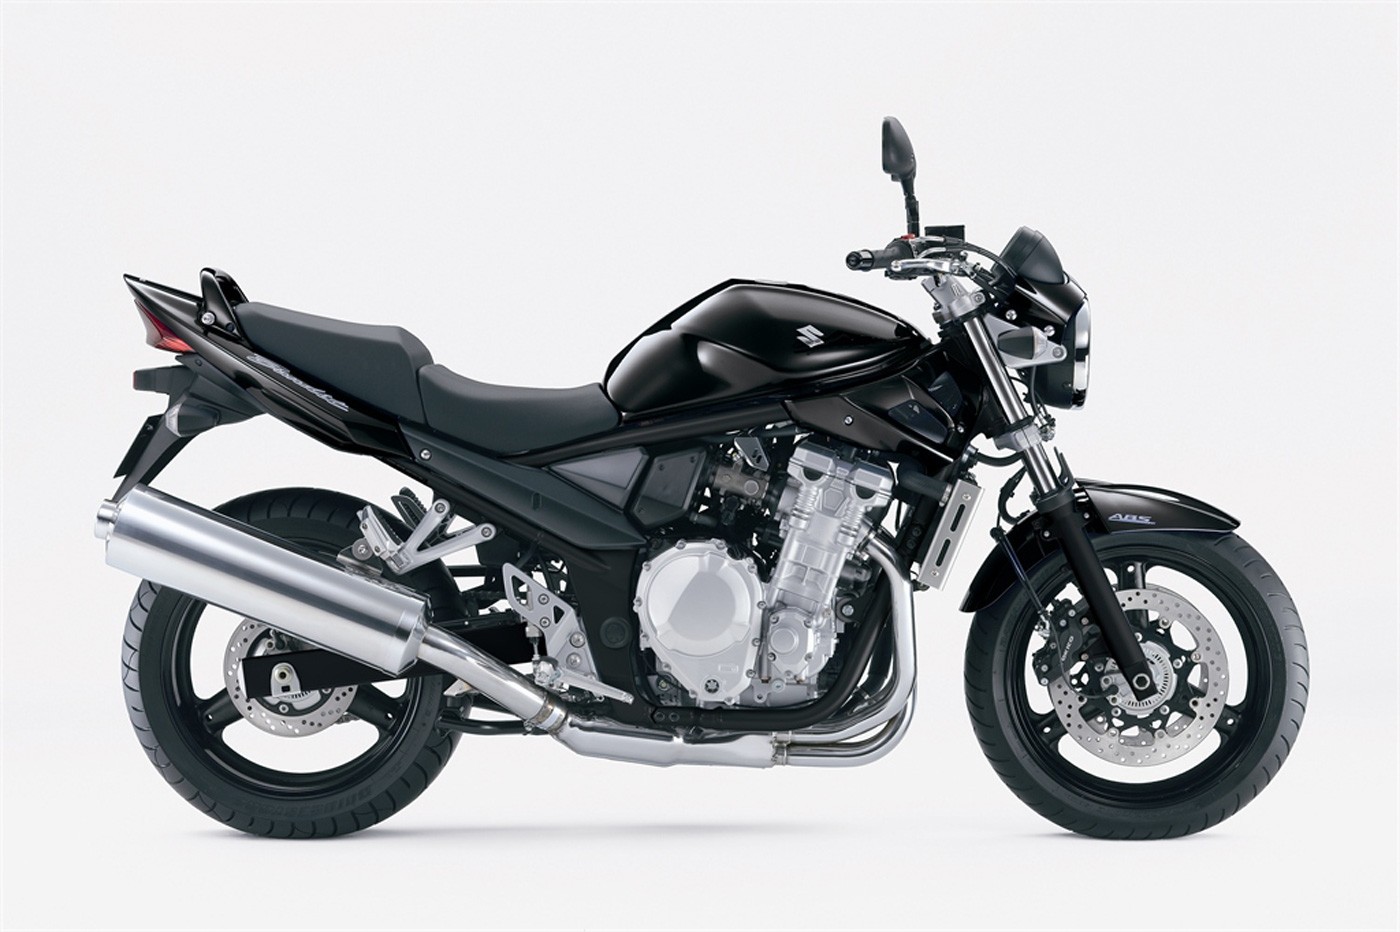 Suzuki Gsf 600/650 Bandit. Wszystko Co Chciałbyś Wiedzieć O Tym Modelu! | Świat Motocykli